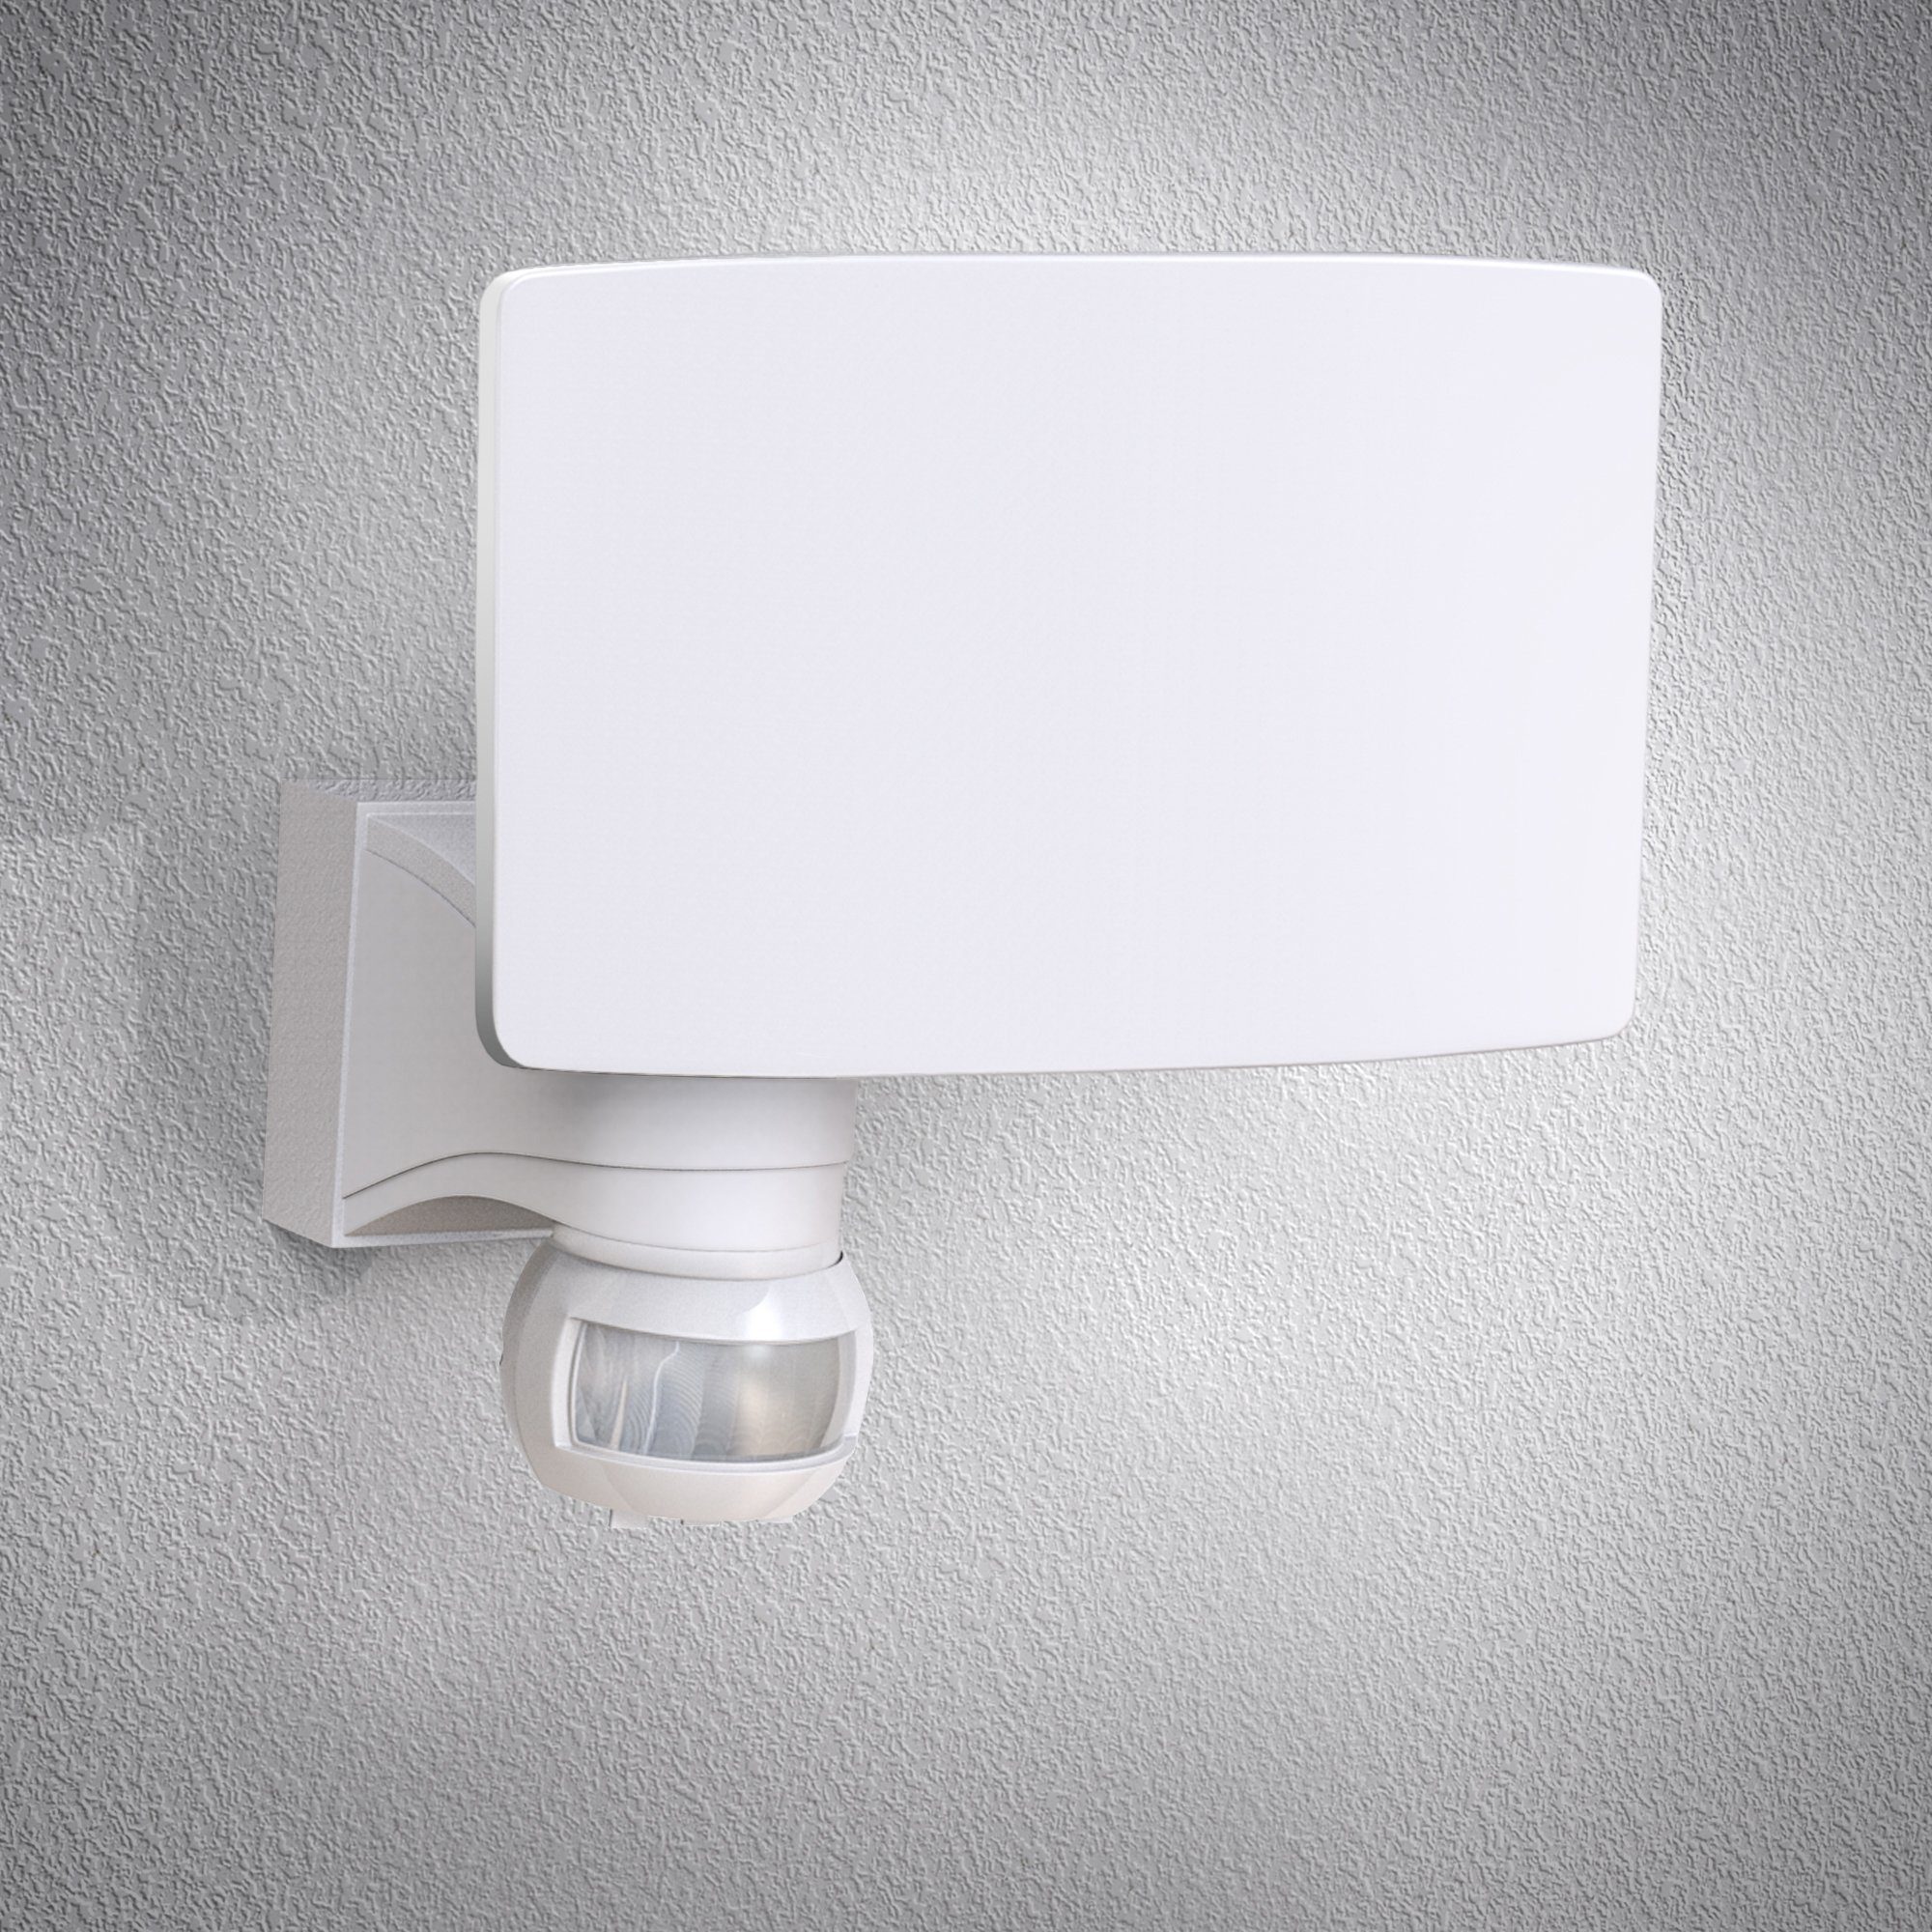 18W LED Außenleuchte mit Bewegungsmelder Wand-Lampe Wandleuchte Sensor Warmweiß